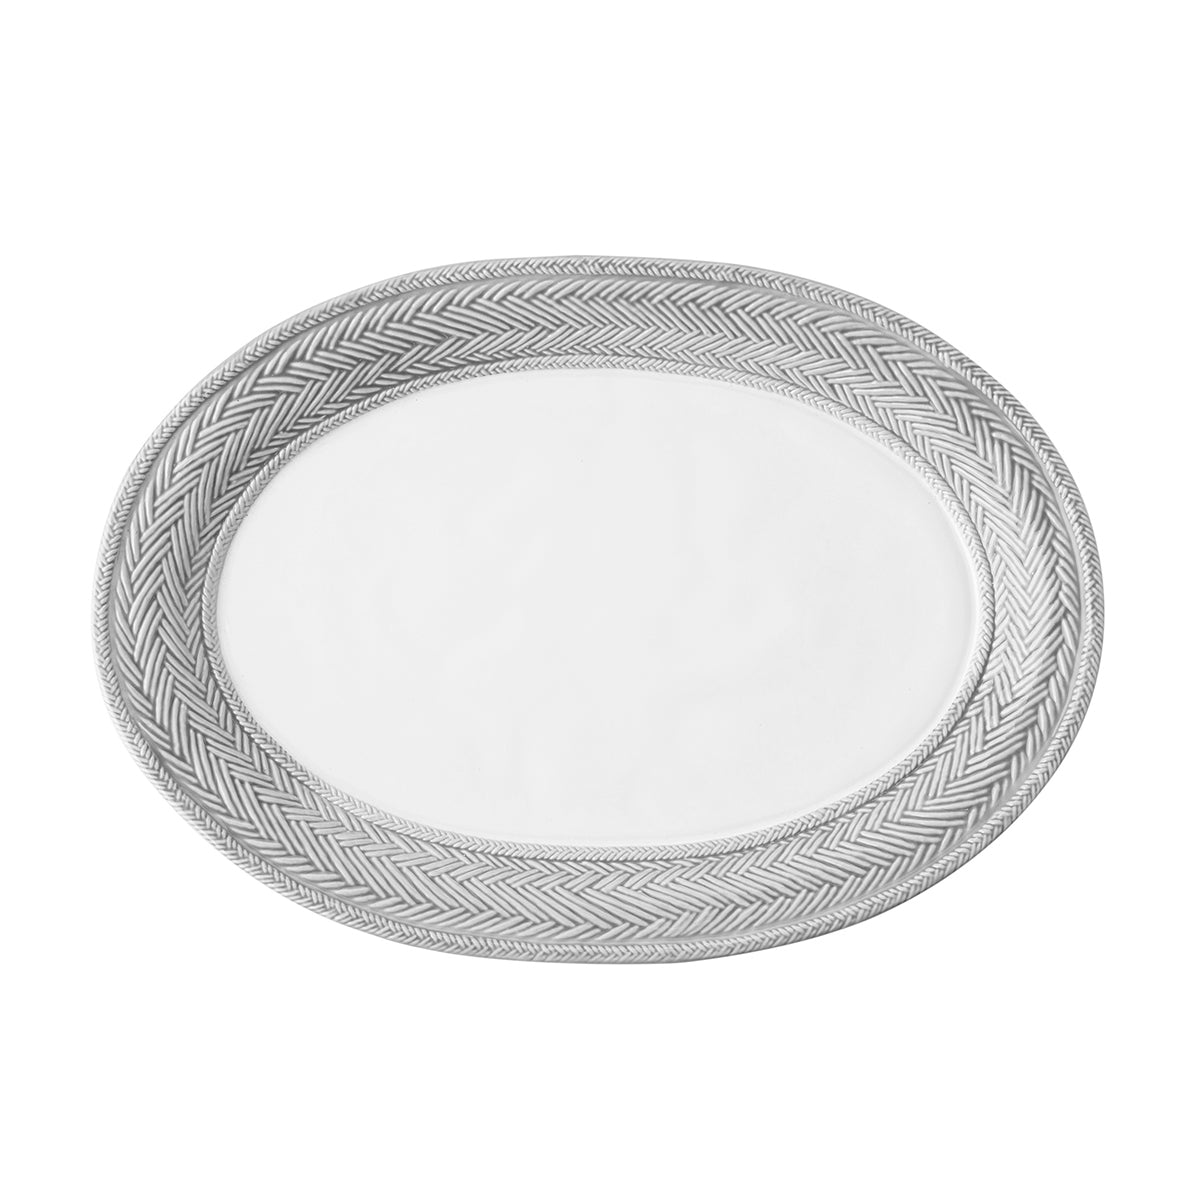 Le Panier 17in Platter - Grey Mist-1st